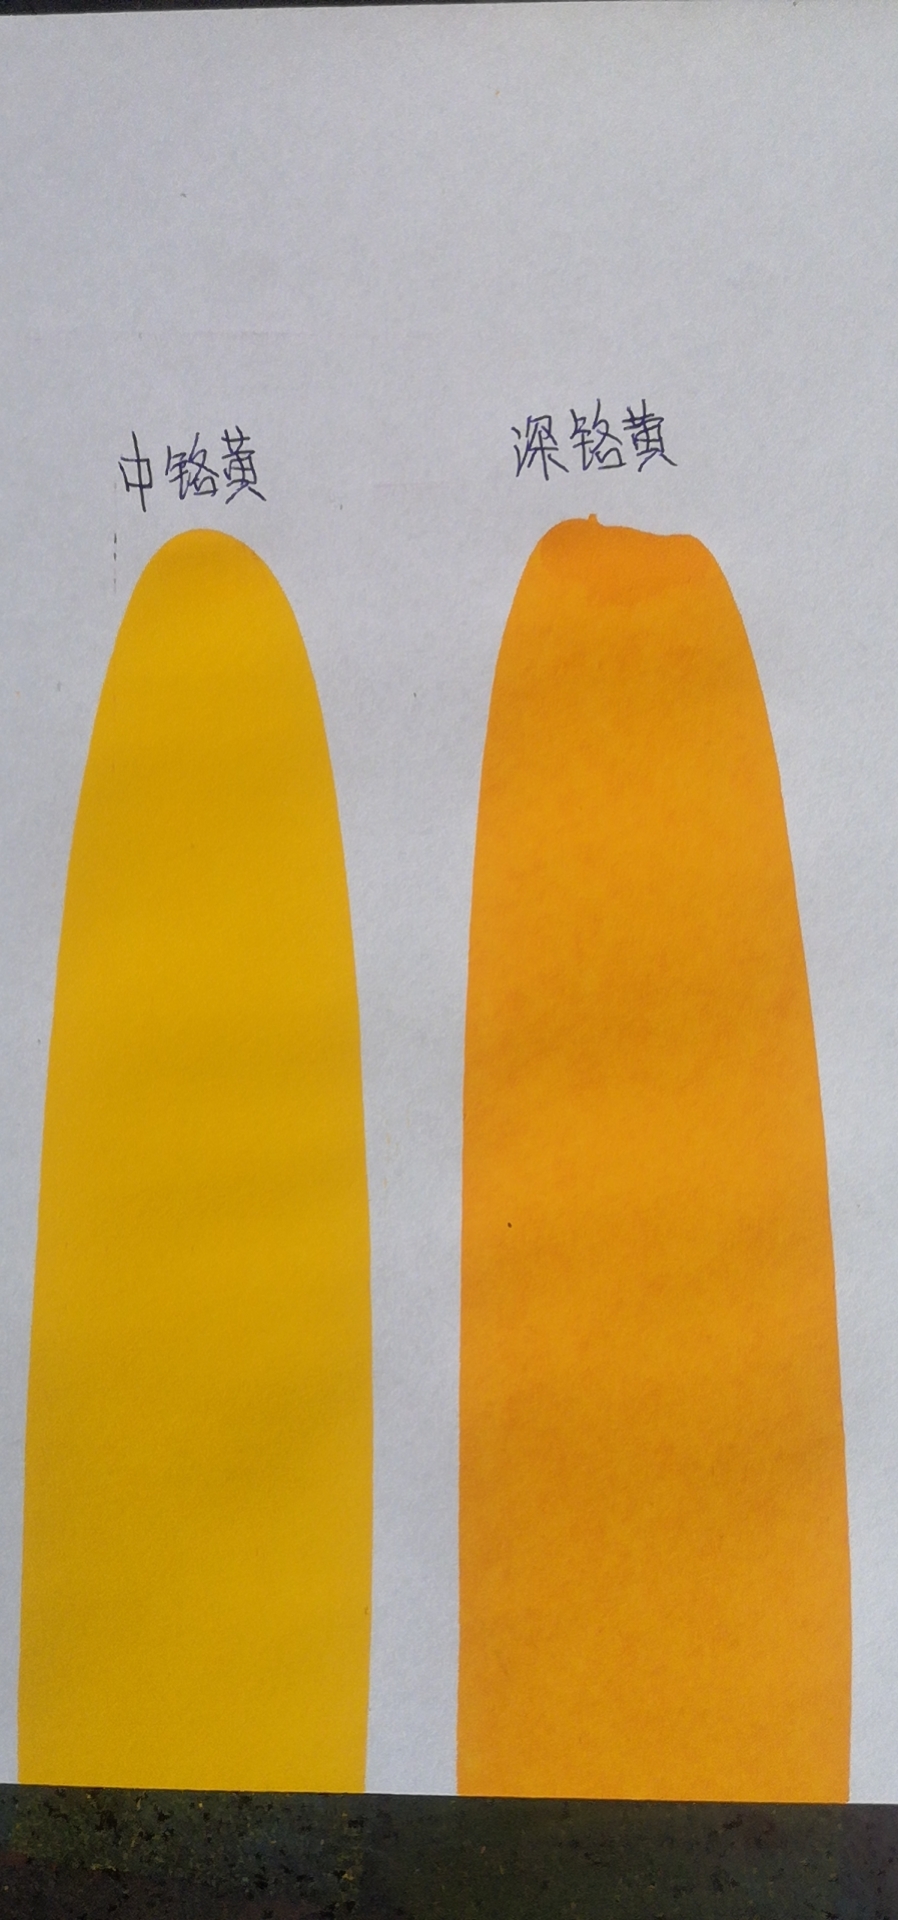 上海色浆 103中铬黄色浆   501柠檬黄色浆  钼铬红 油性环保色浆  水性色浆示例图9